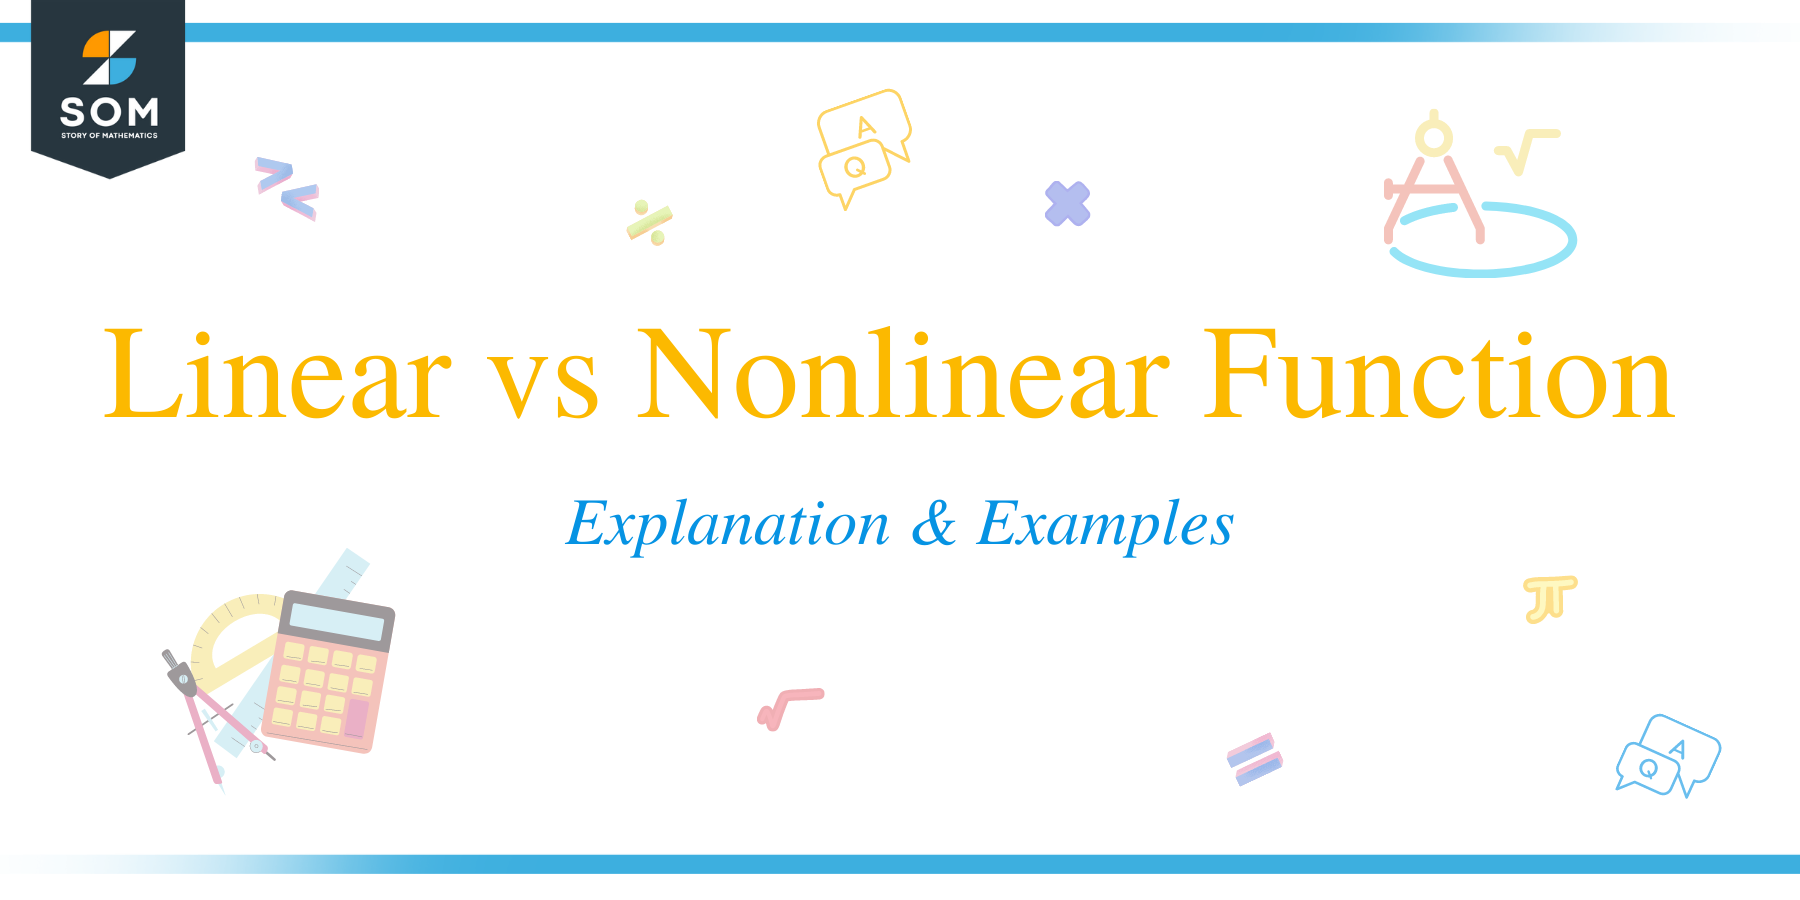 Linear vs Nonlinear Function